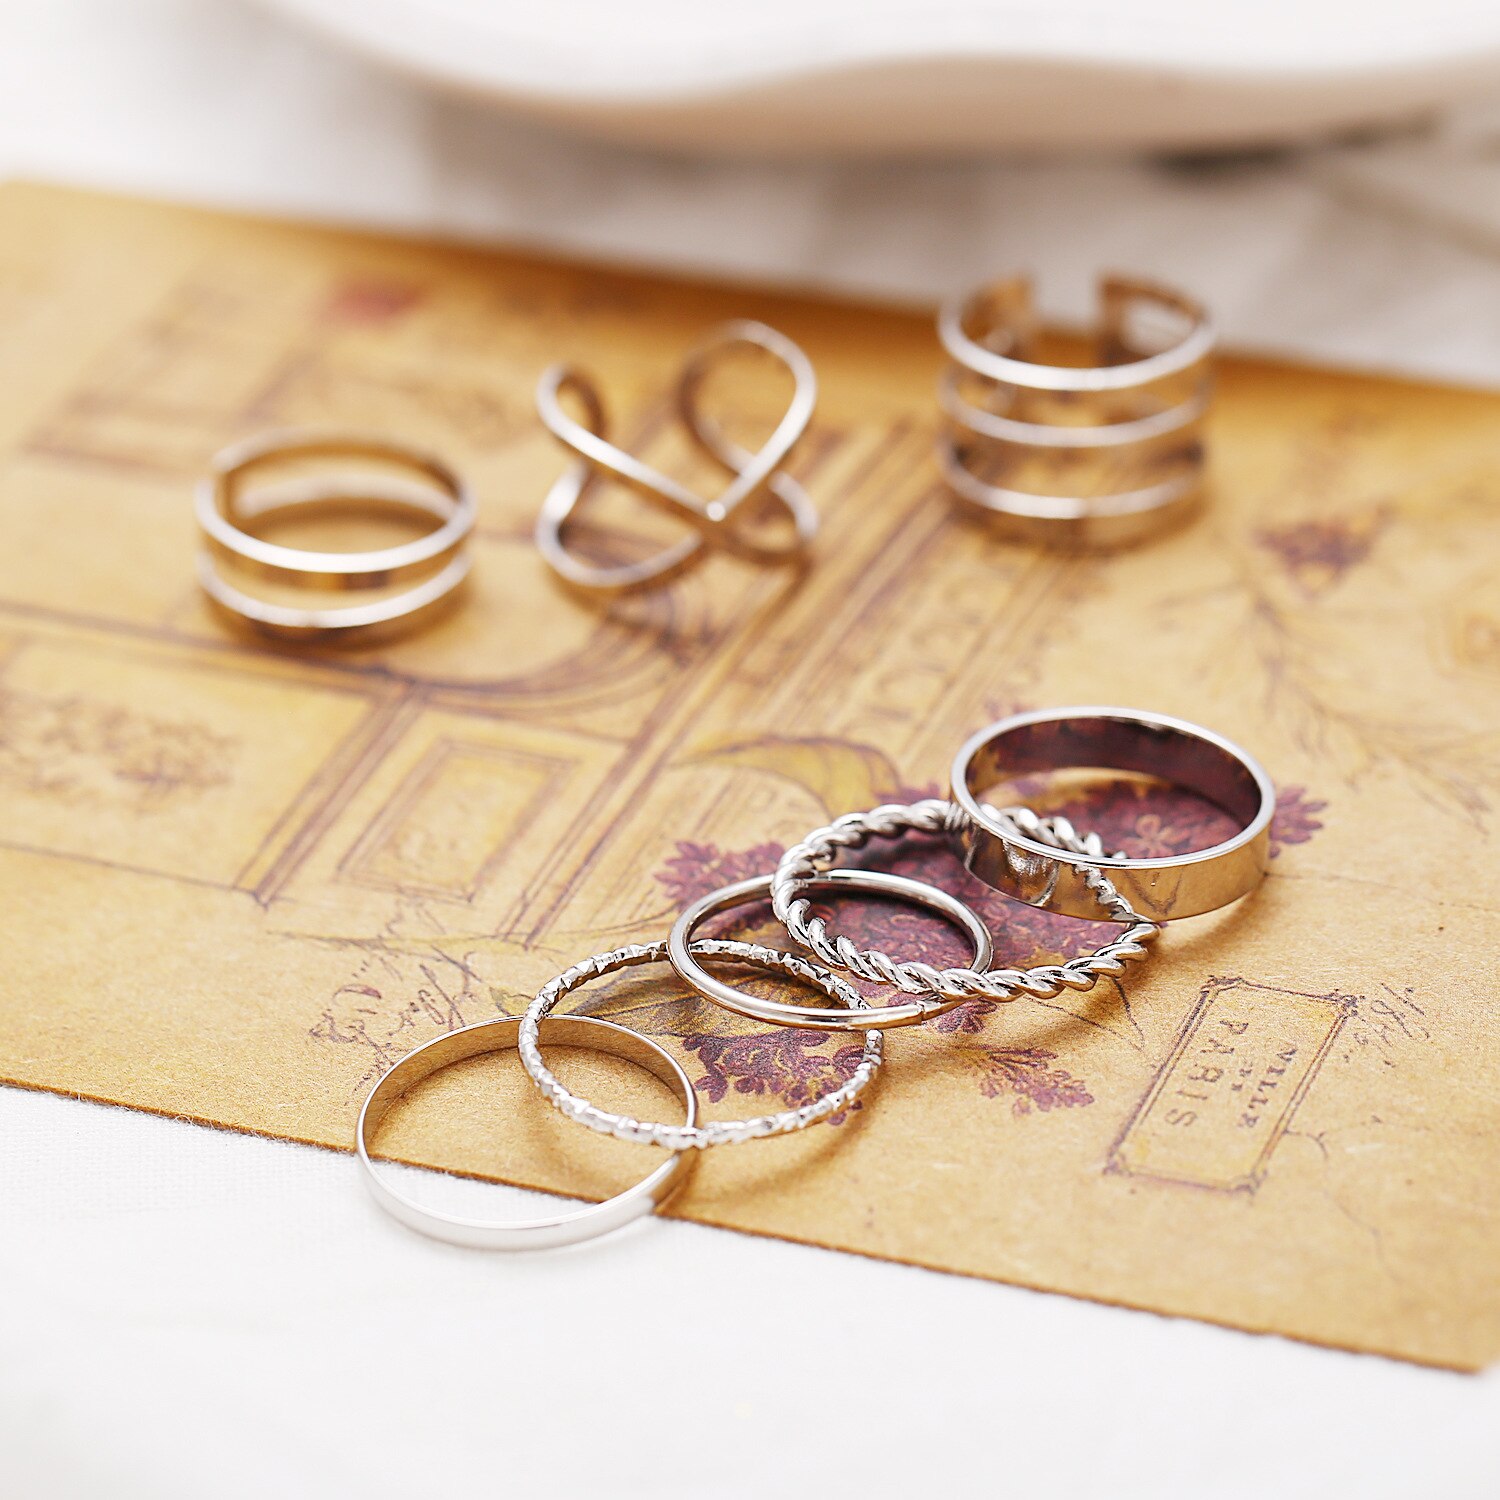 8 Stks/set Bohemian Vintage Ronde Hollow Geometrische Ringen Voor Vrouwen Mode Cross Twist Open Ring Knuckle Vinger Ringen Sieraden